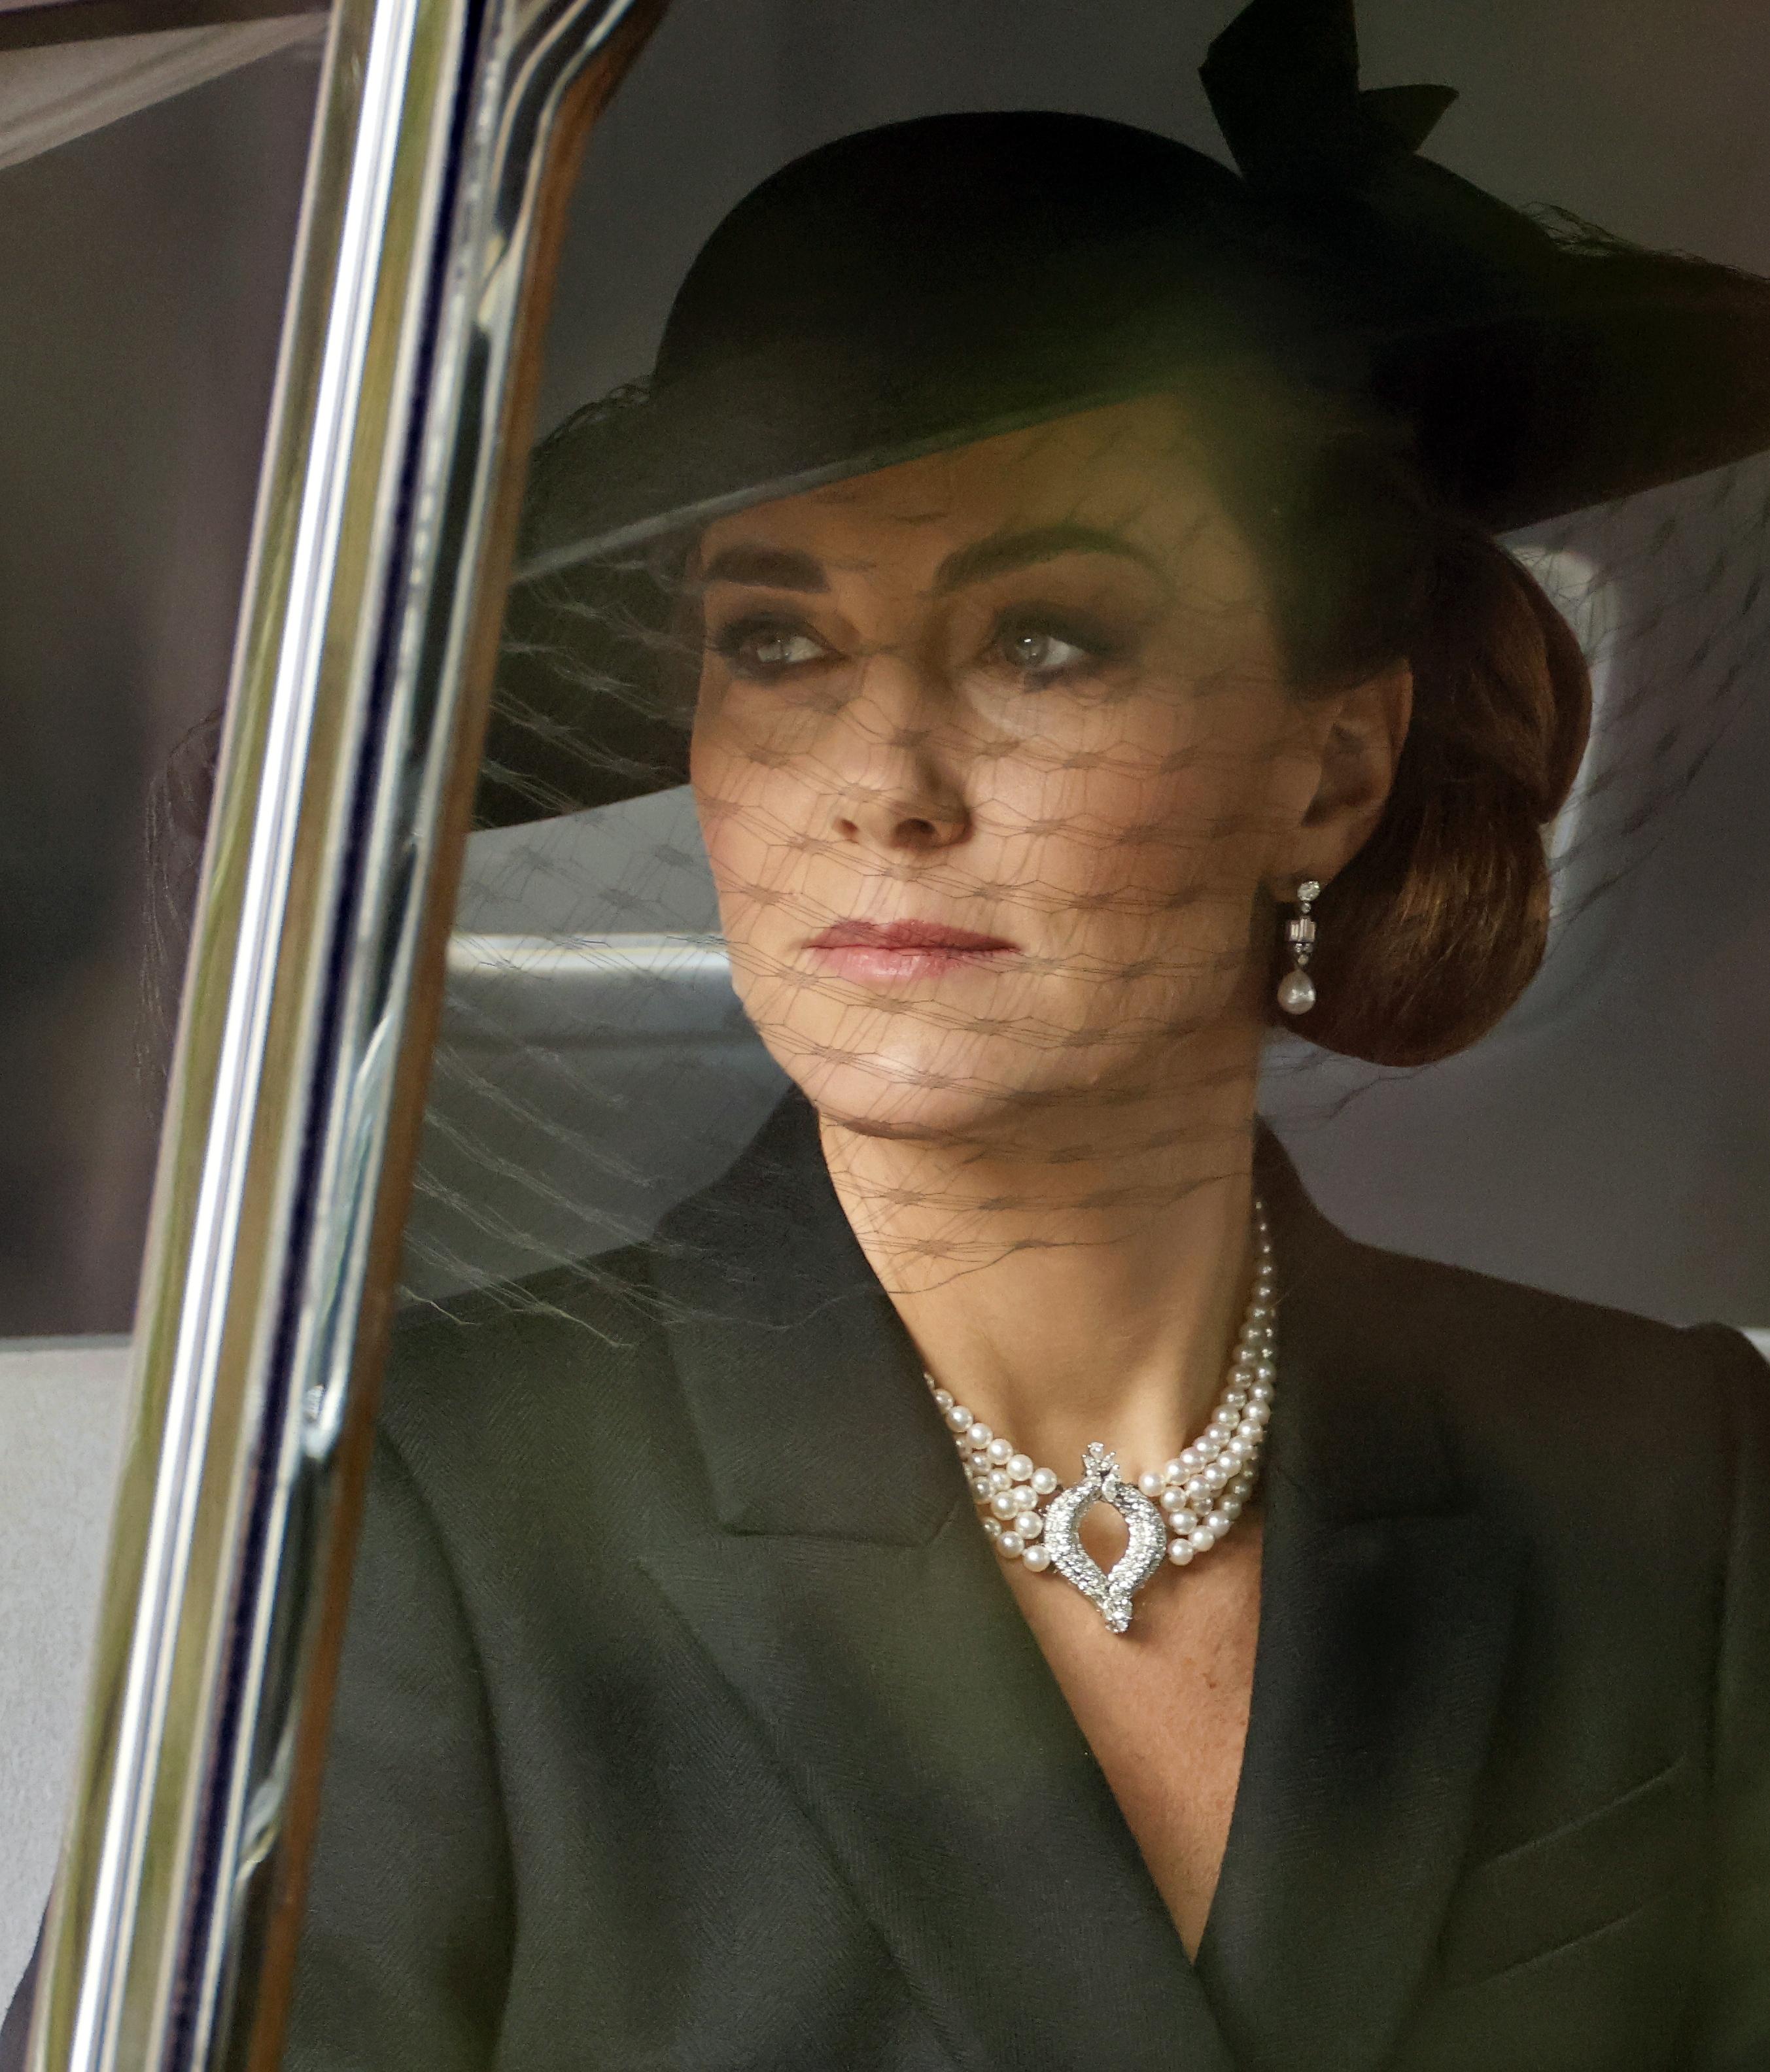 Helt siden det ble kjent at dronningen hadde gått bort, har prinsesse Kate brukt perler ved flere anledninger. Her ankommer hun begravelsen iført dronningens kjede og øredobber.